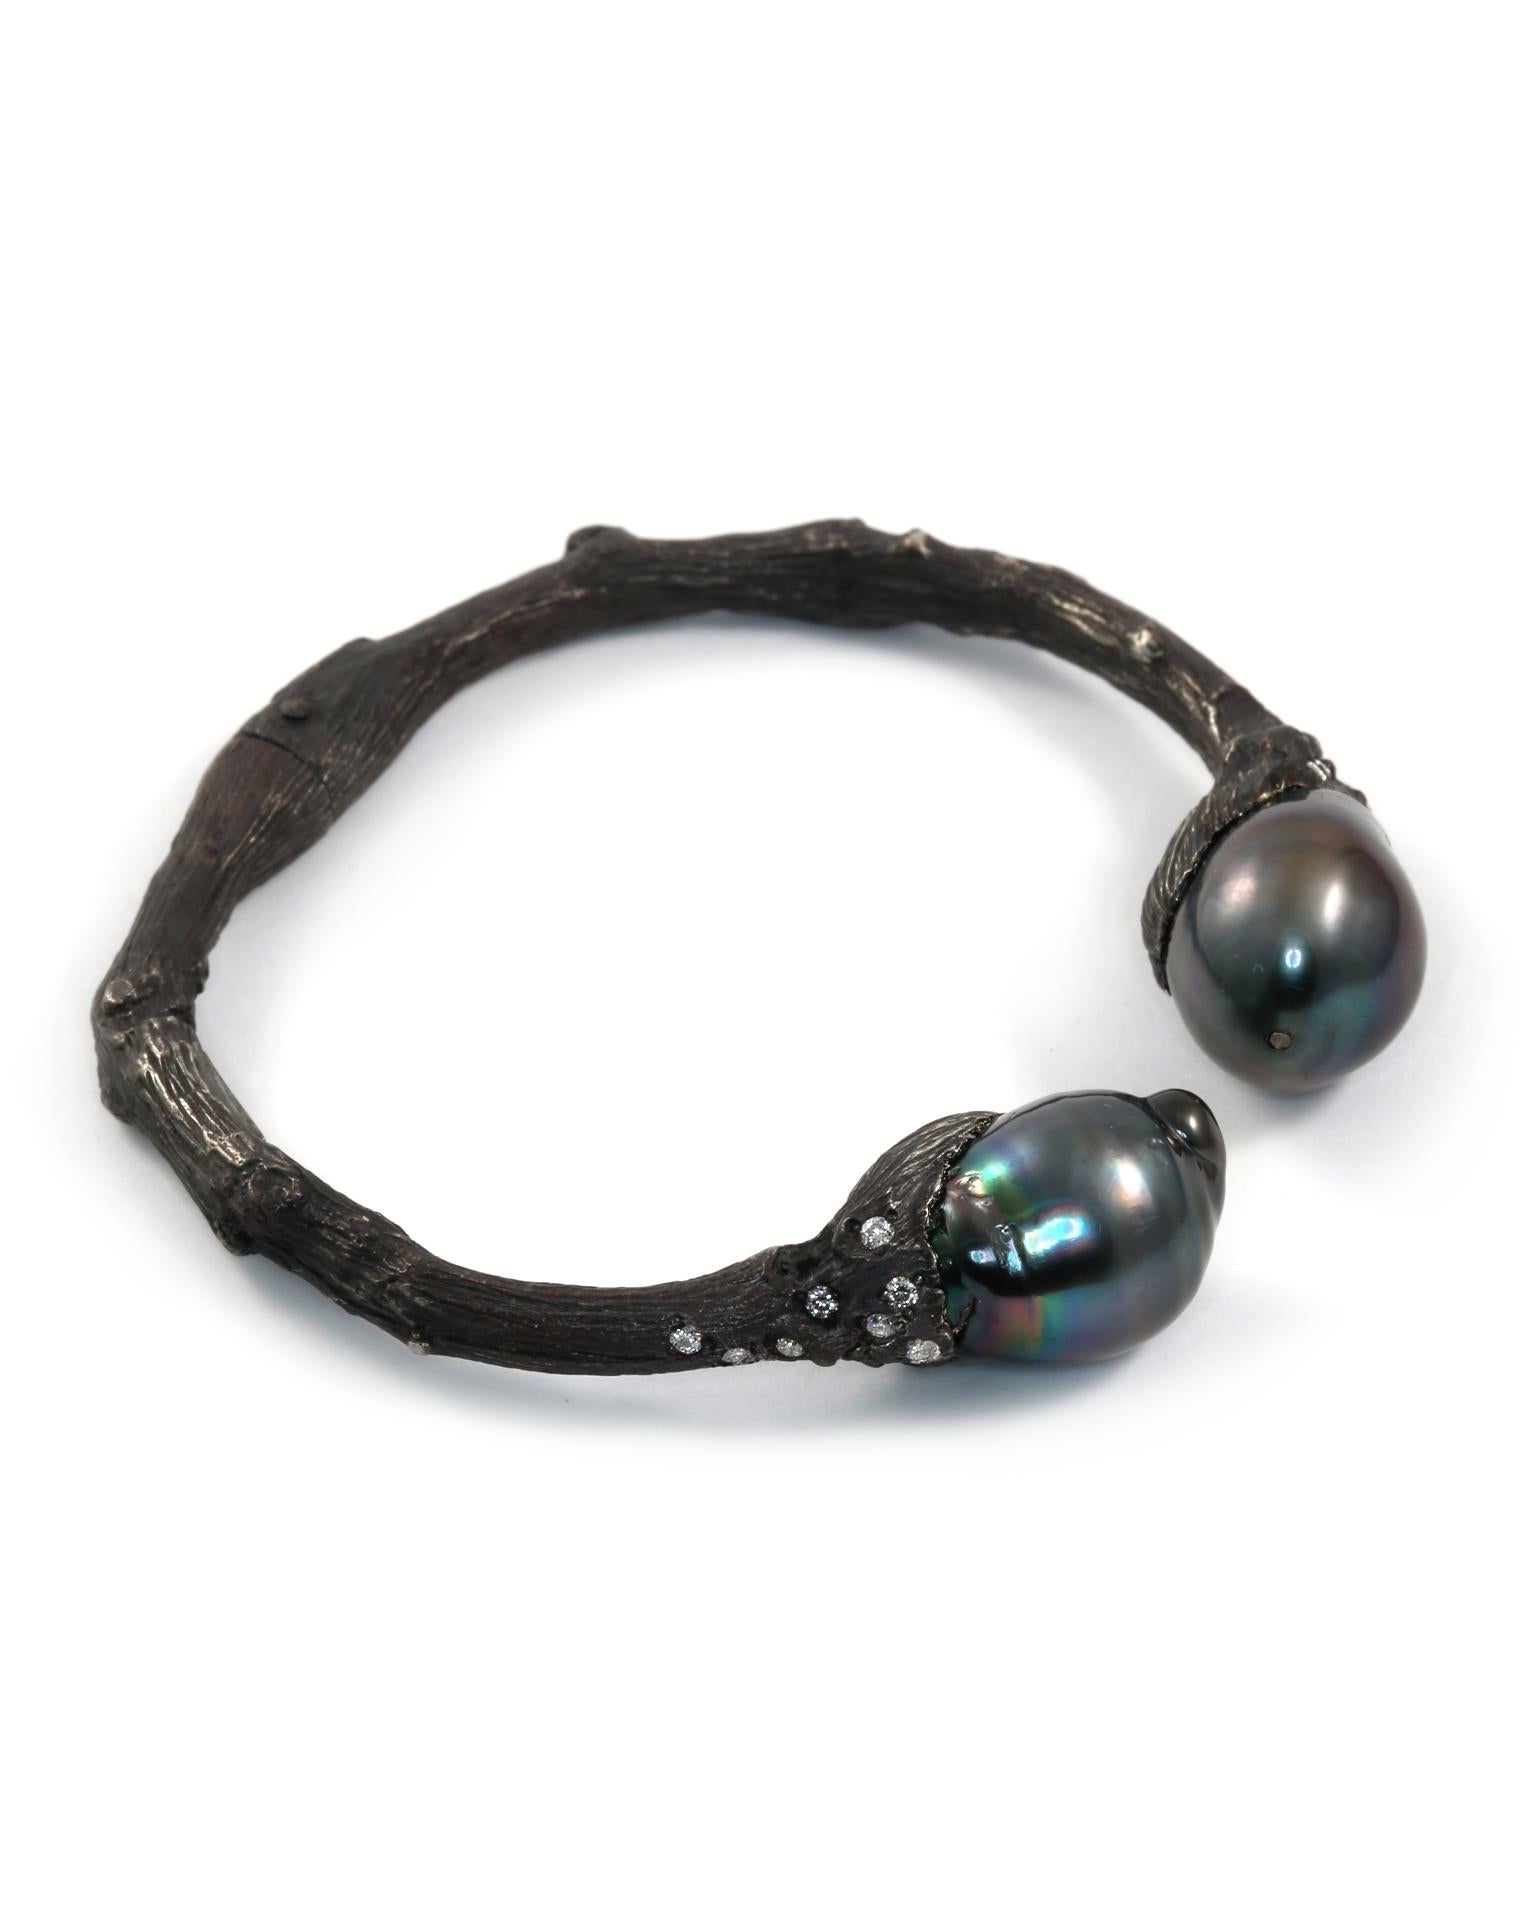 S'inspirant de l'éternel arbre de vie, l'esprit organique de K. Brunini se retrouve dans cette large manchette en argent sterling, coiffée de perles de Tahiti de plus de 12 mm et de diamants d'un poids total de 0,50 carat.

Dans la collection